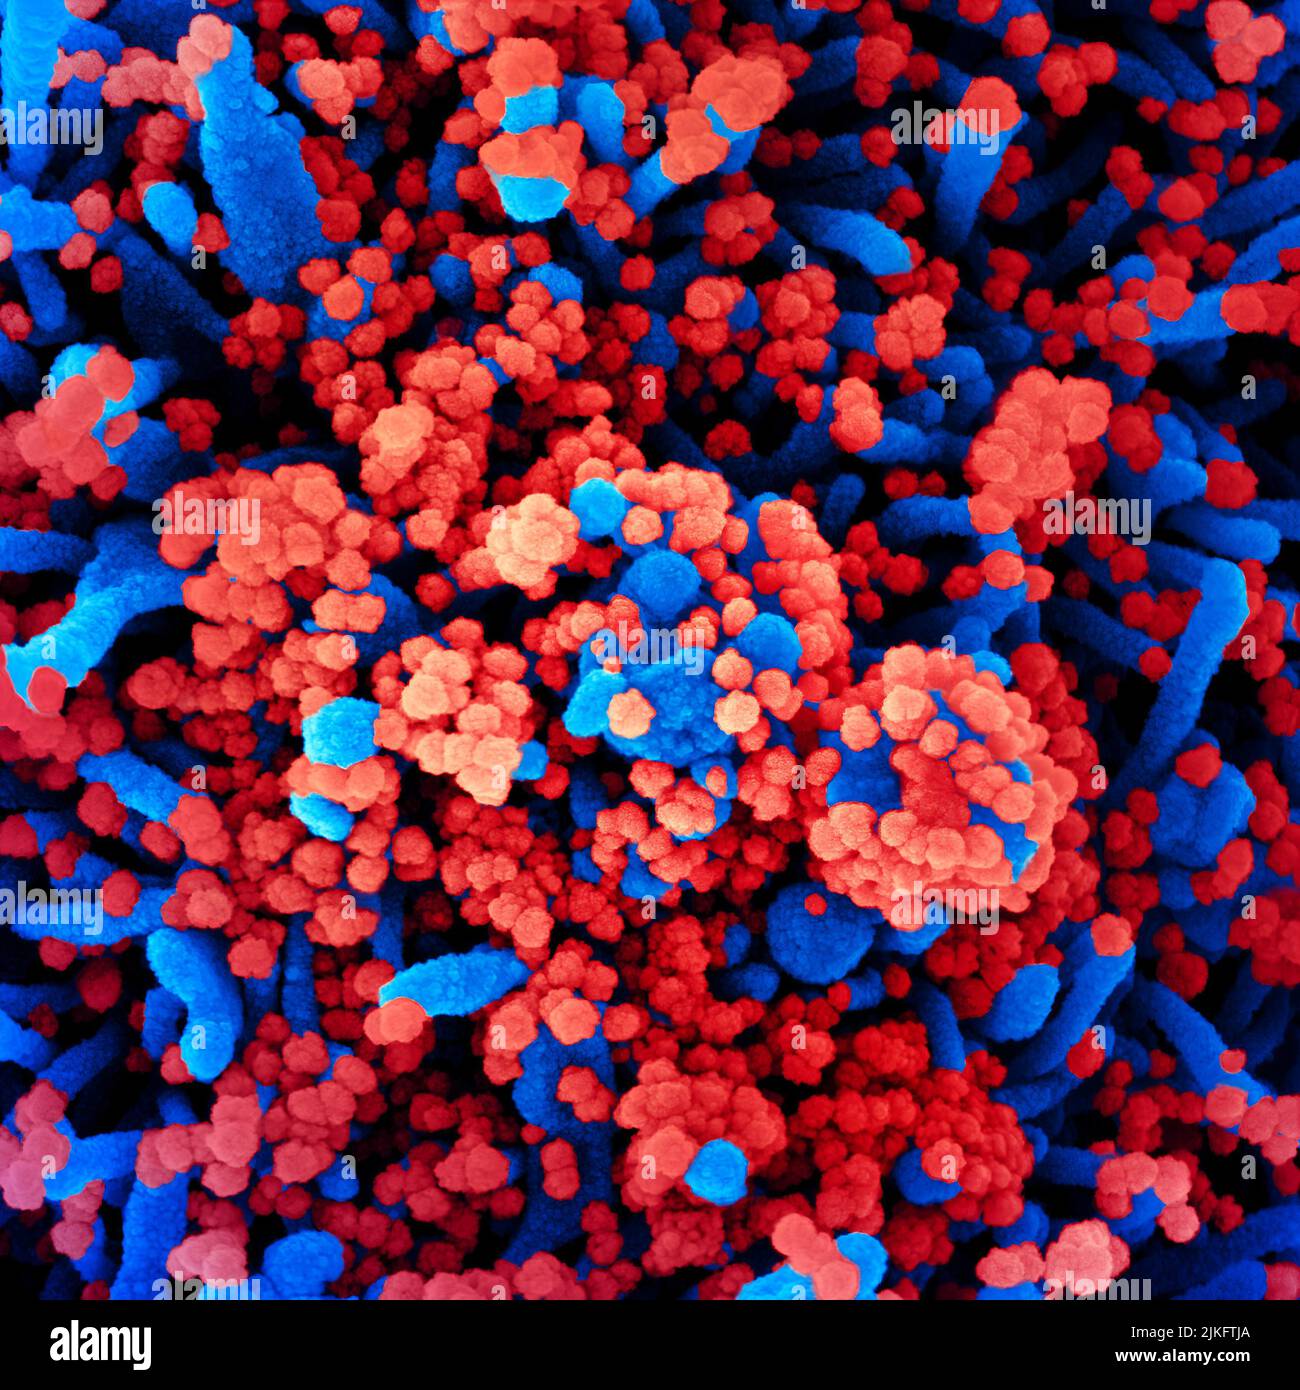 Micrografia elettronica a scansione colorata di una cellula (blu) fortemente infettata con particelle di virus SARS-COV-2 (rosso), isolate da un campione di paziente. Immagine richiesta dal NIAID Integrated Research Facility (IRF) a Fort Detrick, Maryland. Foto Stock